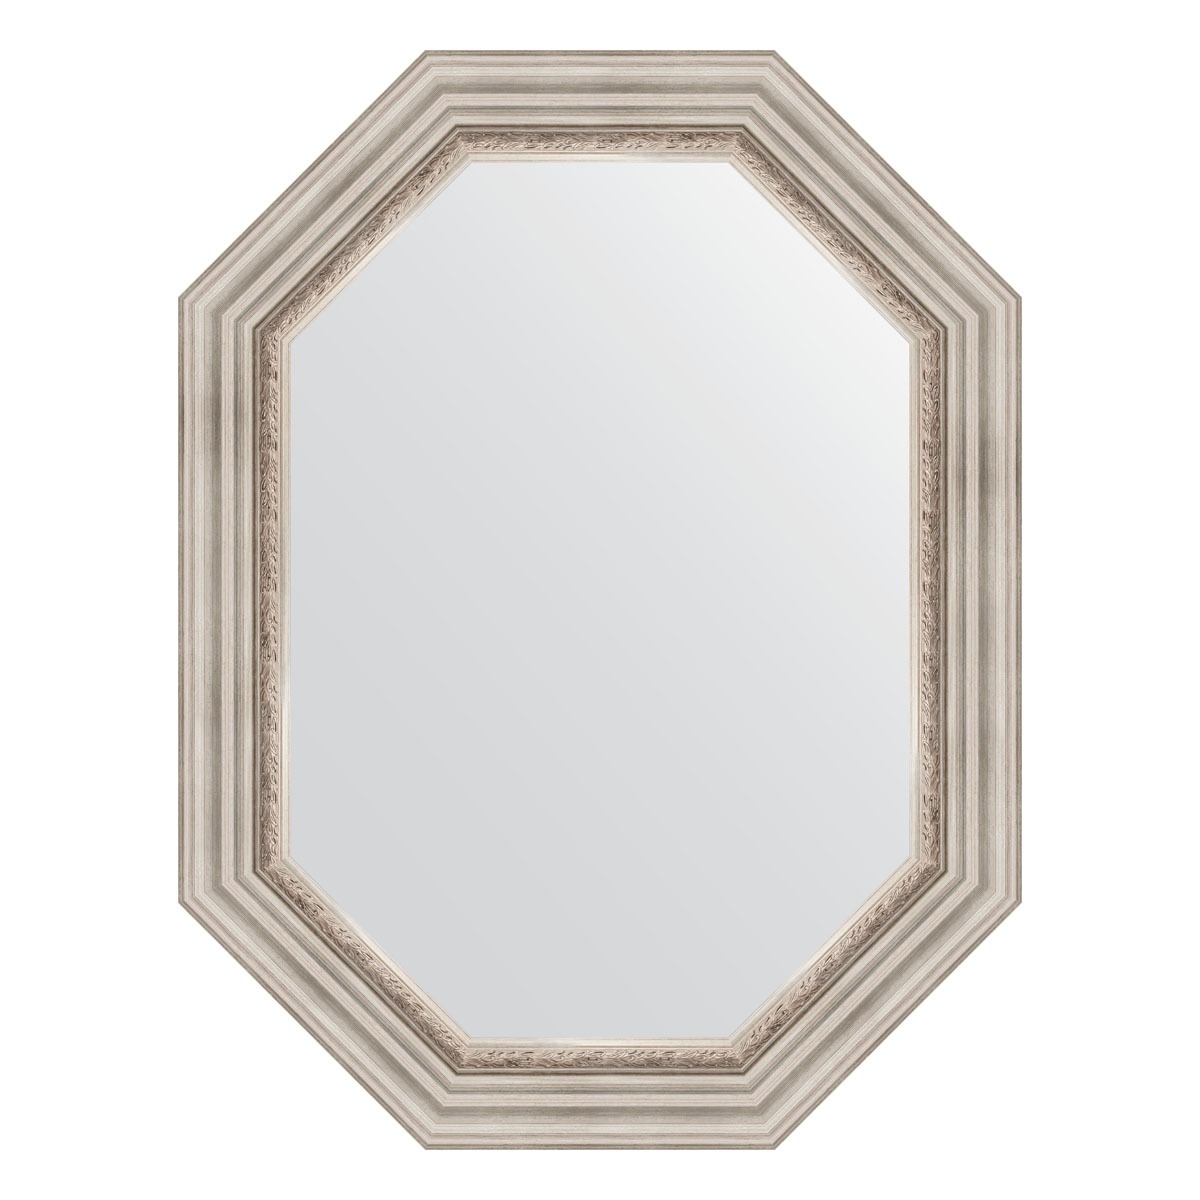 Зеркало в багетной раме Evoform римское серебро 88 мм 66x86 см зеркало в багетной раме evoform хамелеон 88 мм 66x86 см